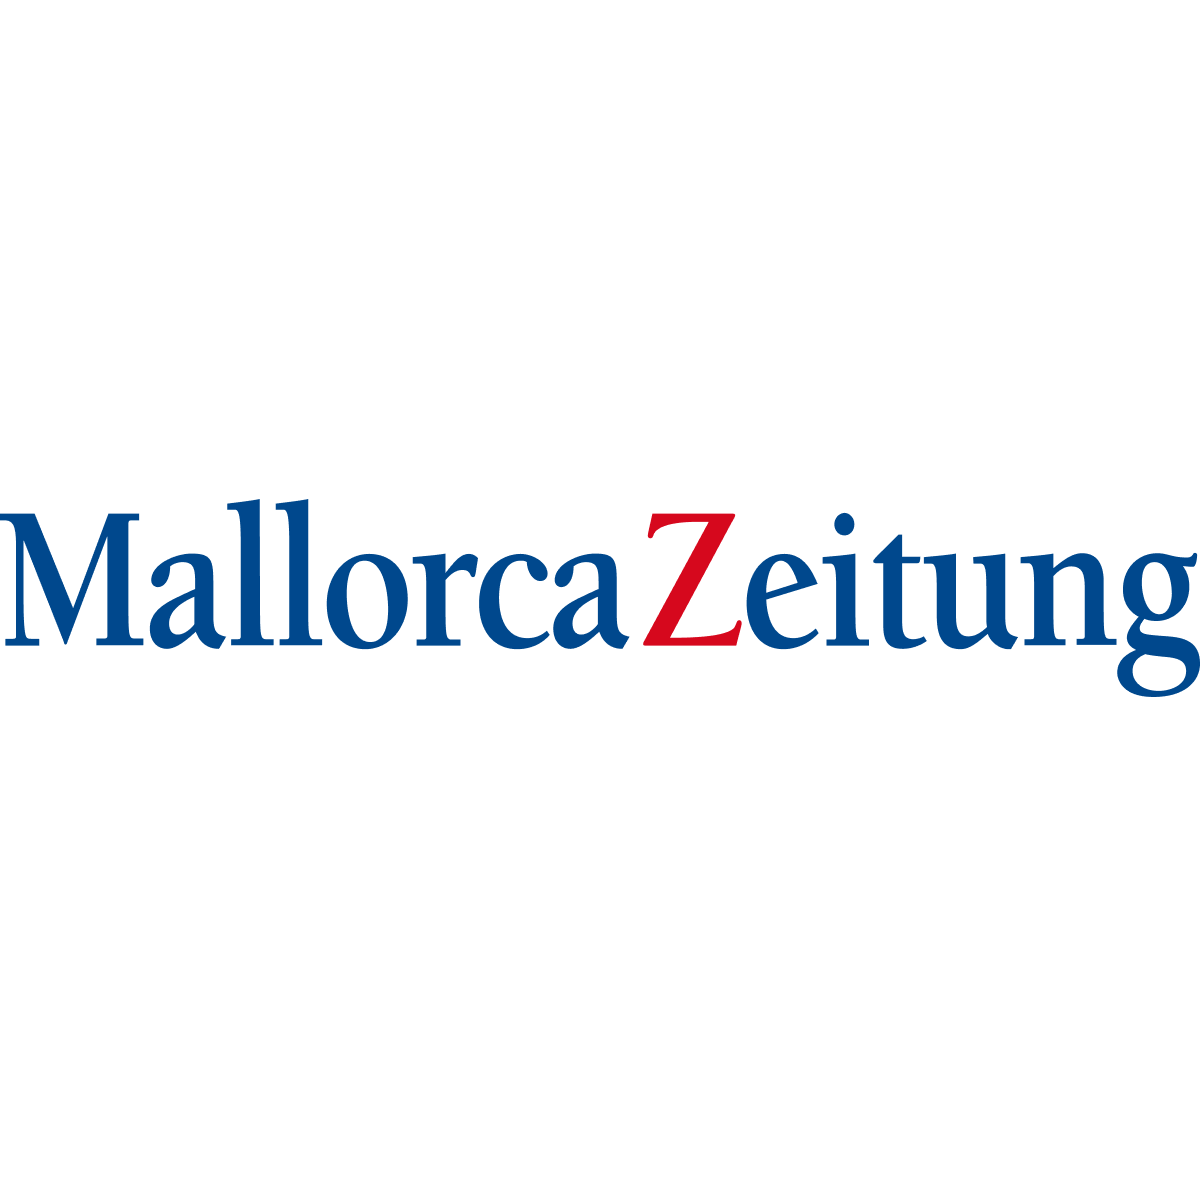 www.mallorcazeitung.es